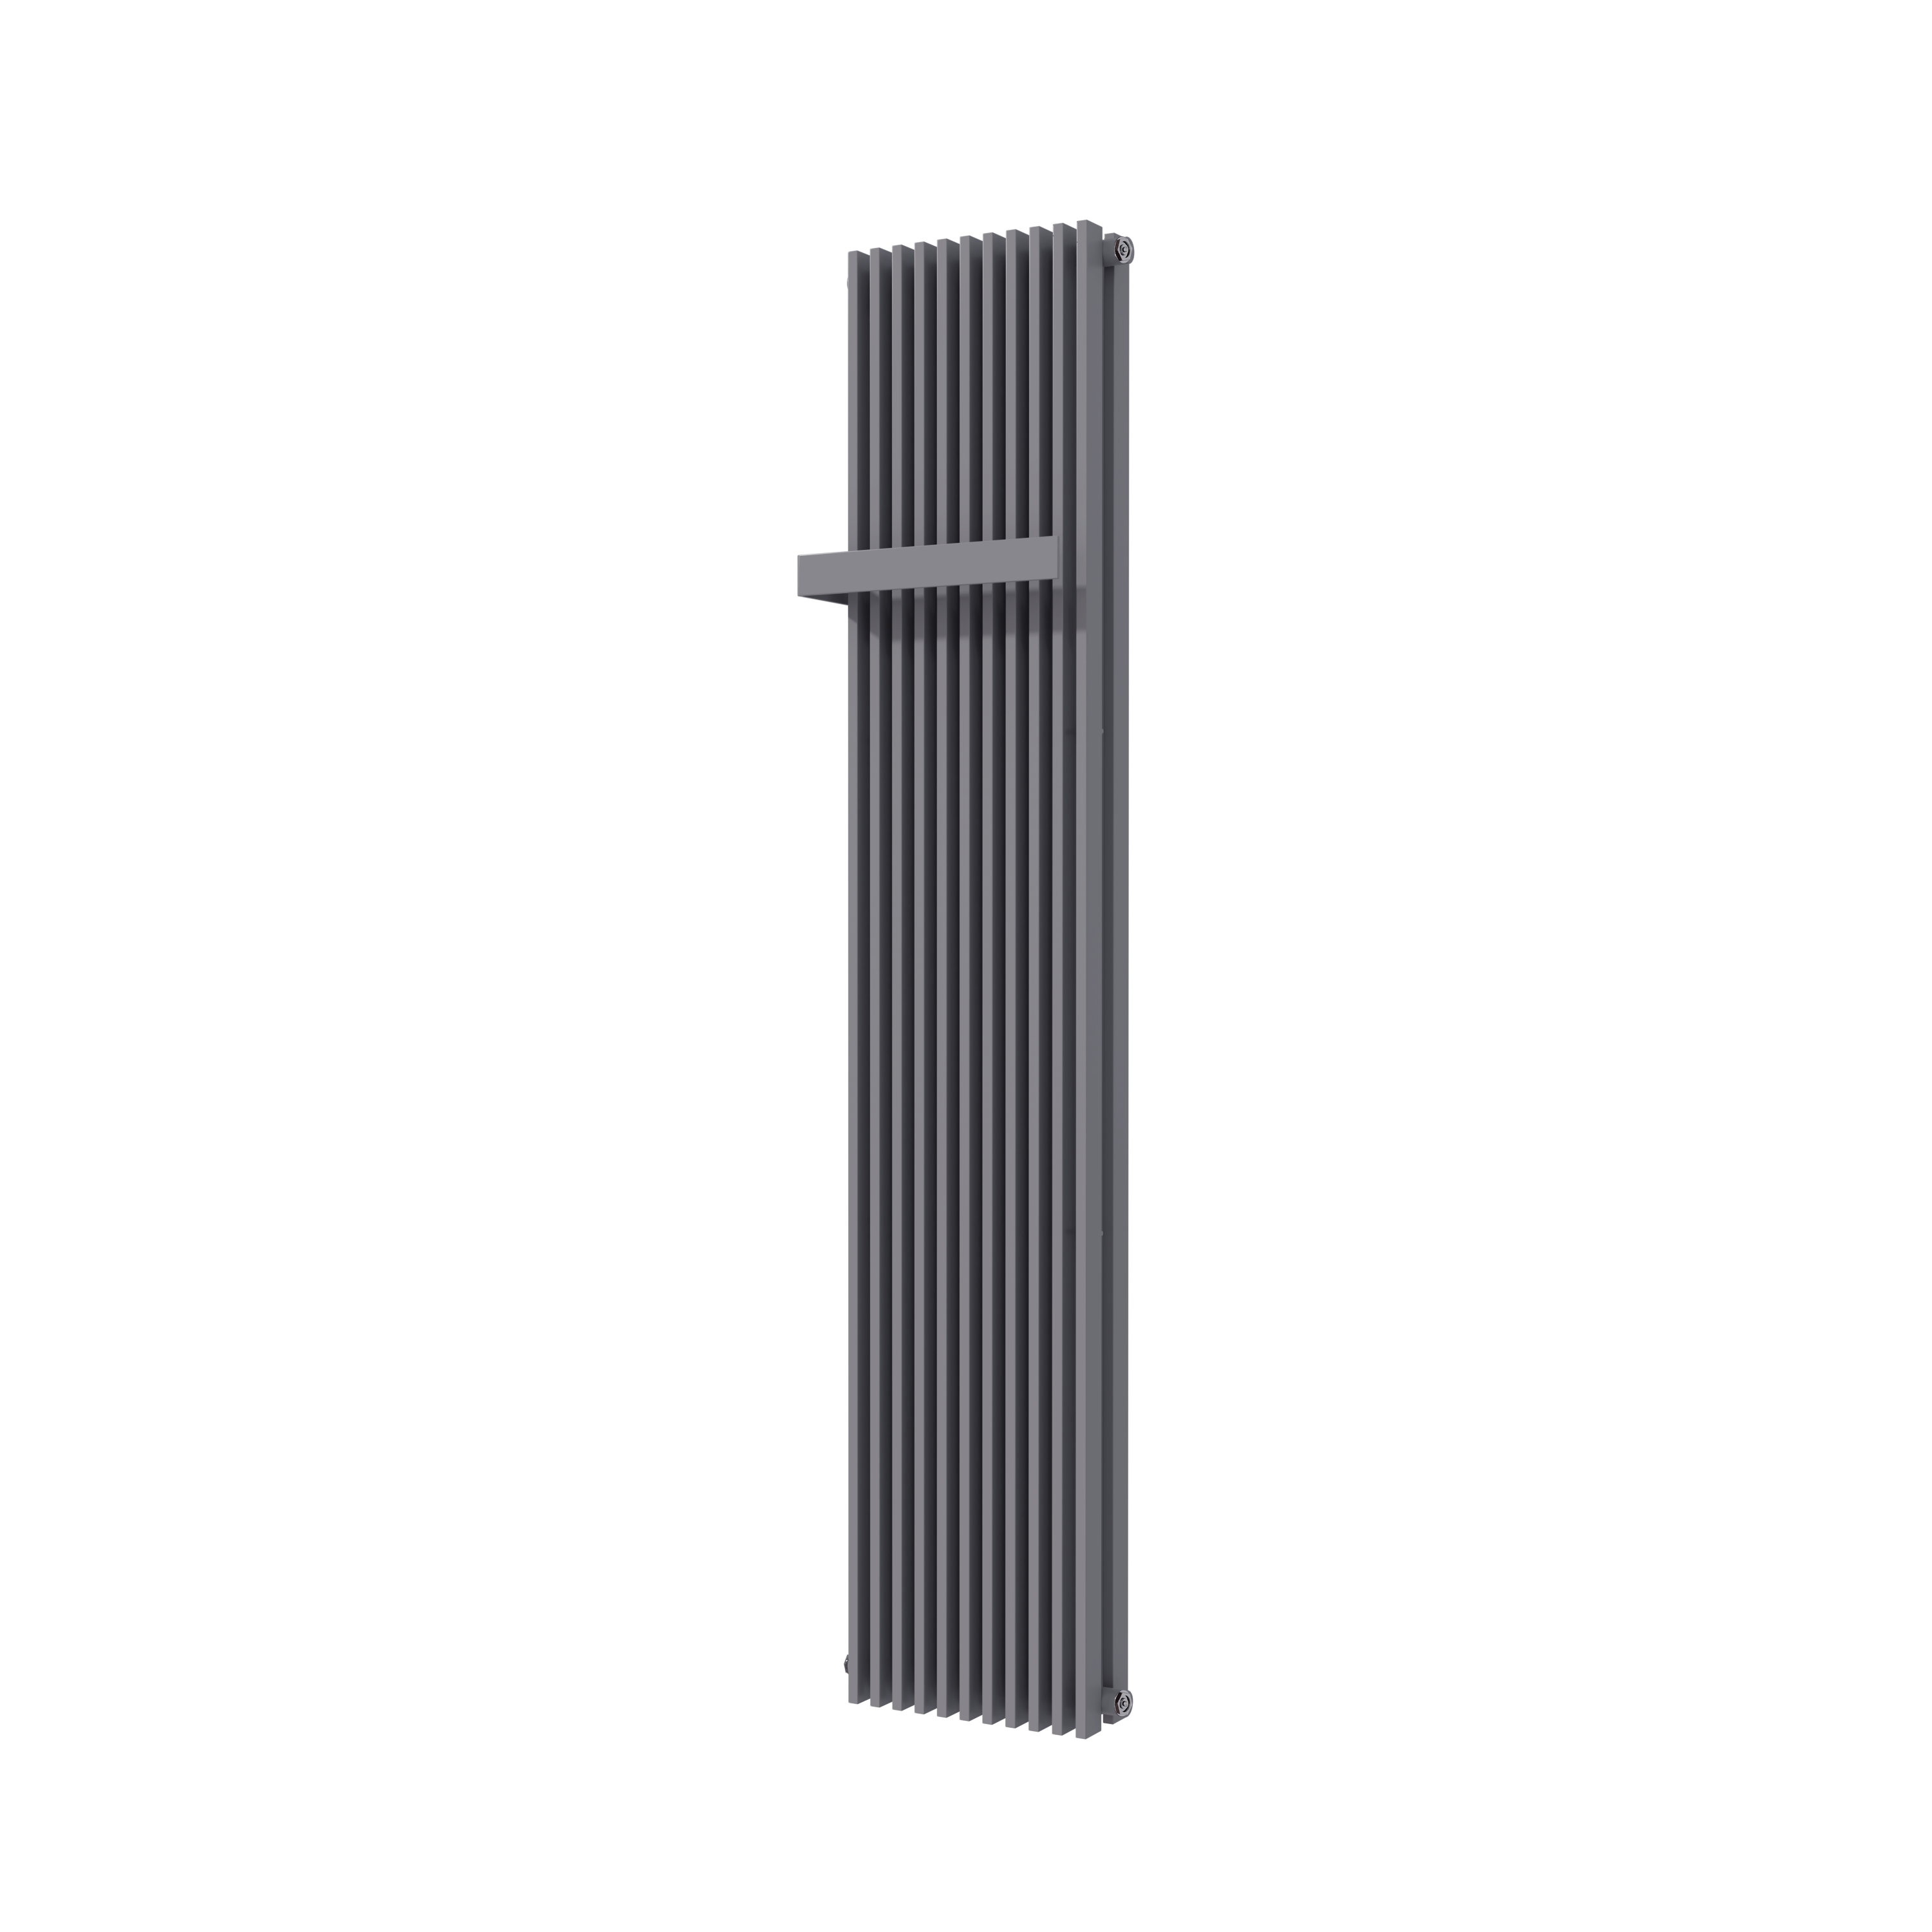 Vipera Corrason dubbele badkamerradiator 40 x 180 cm centrale verwarming antraciet grijs zij- en middenaansluiting 2,238W